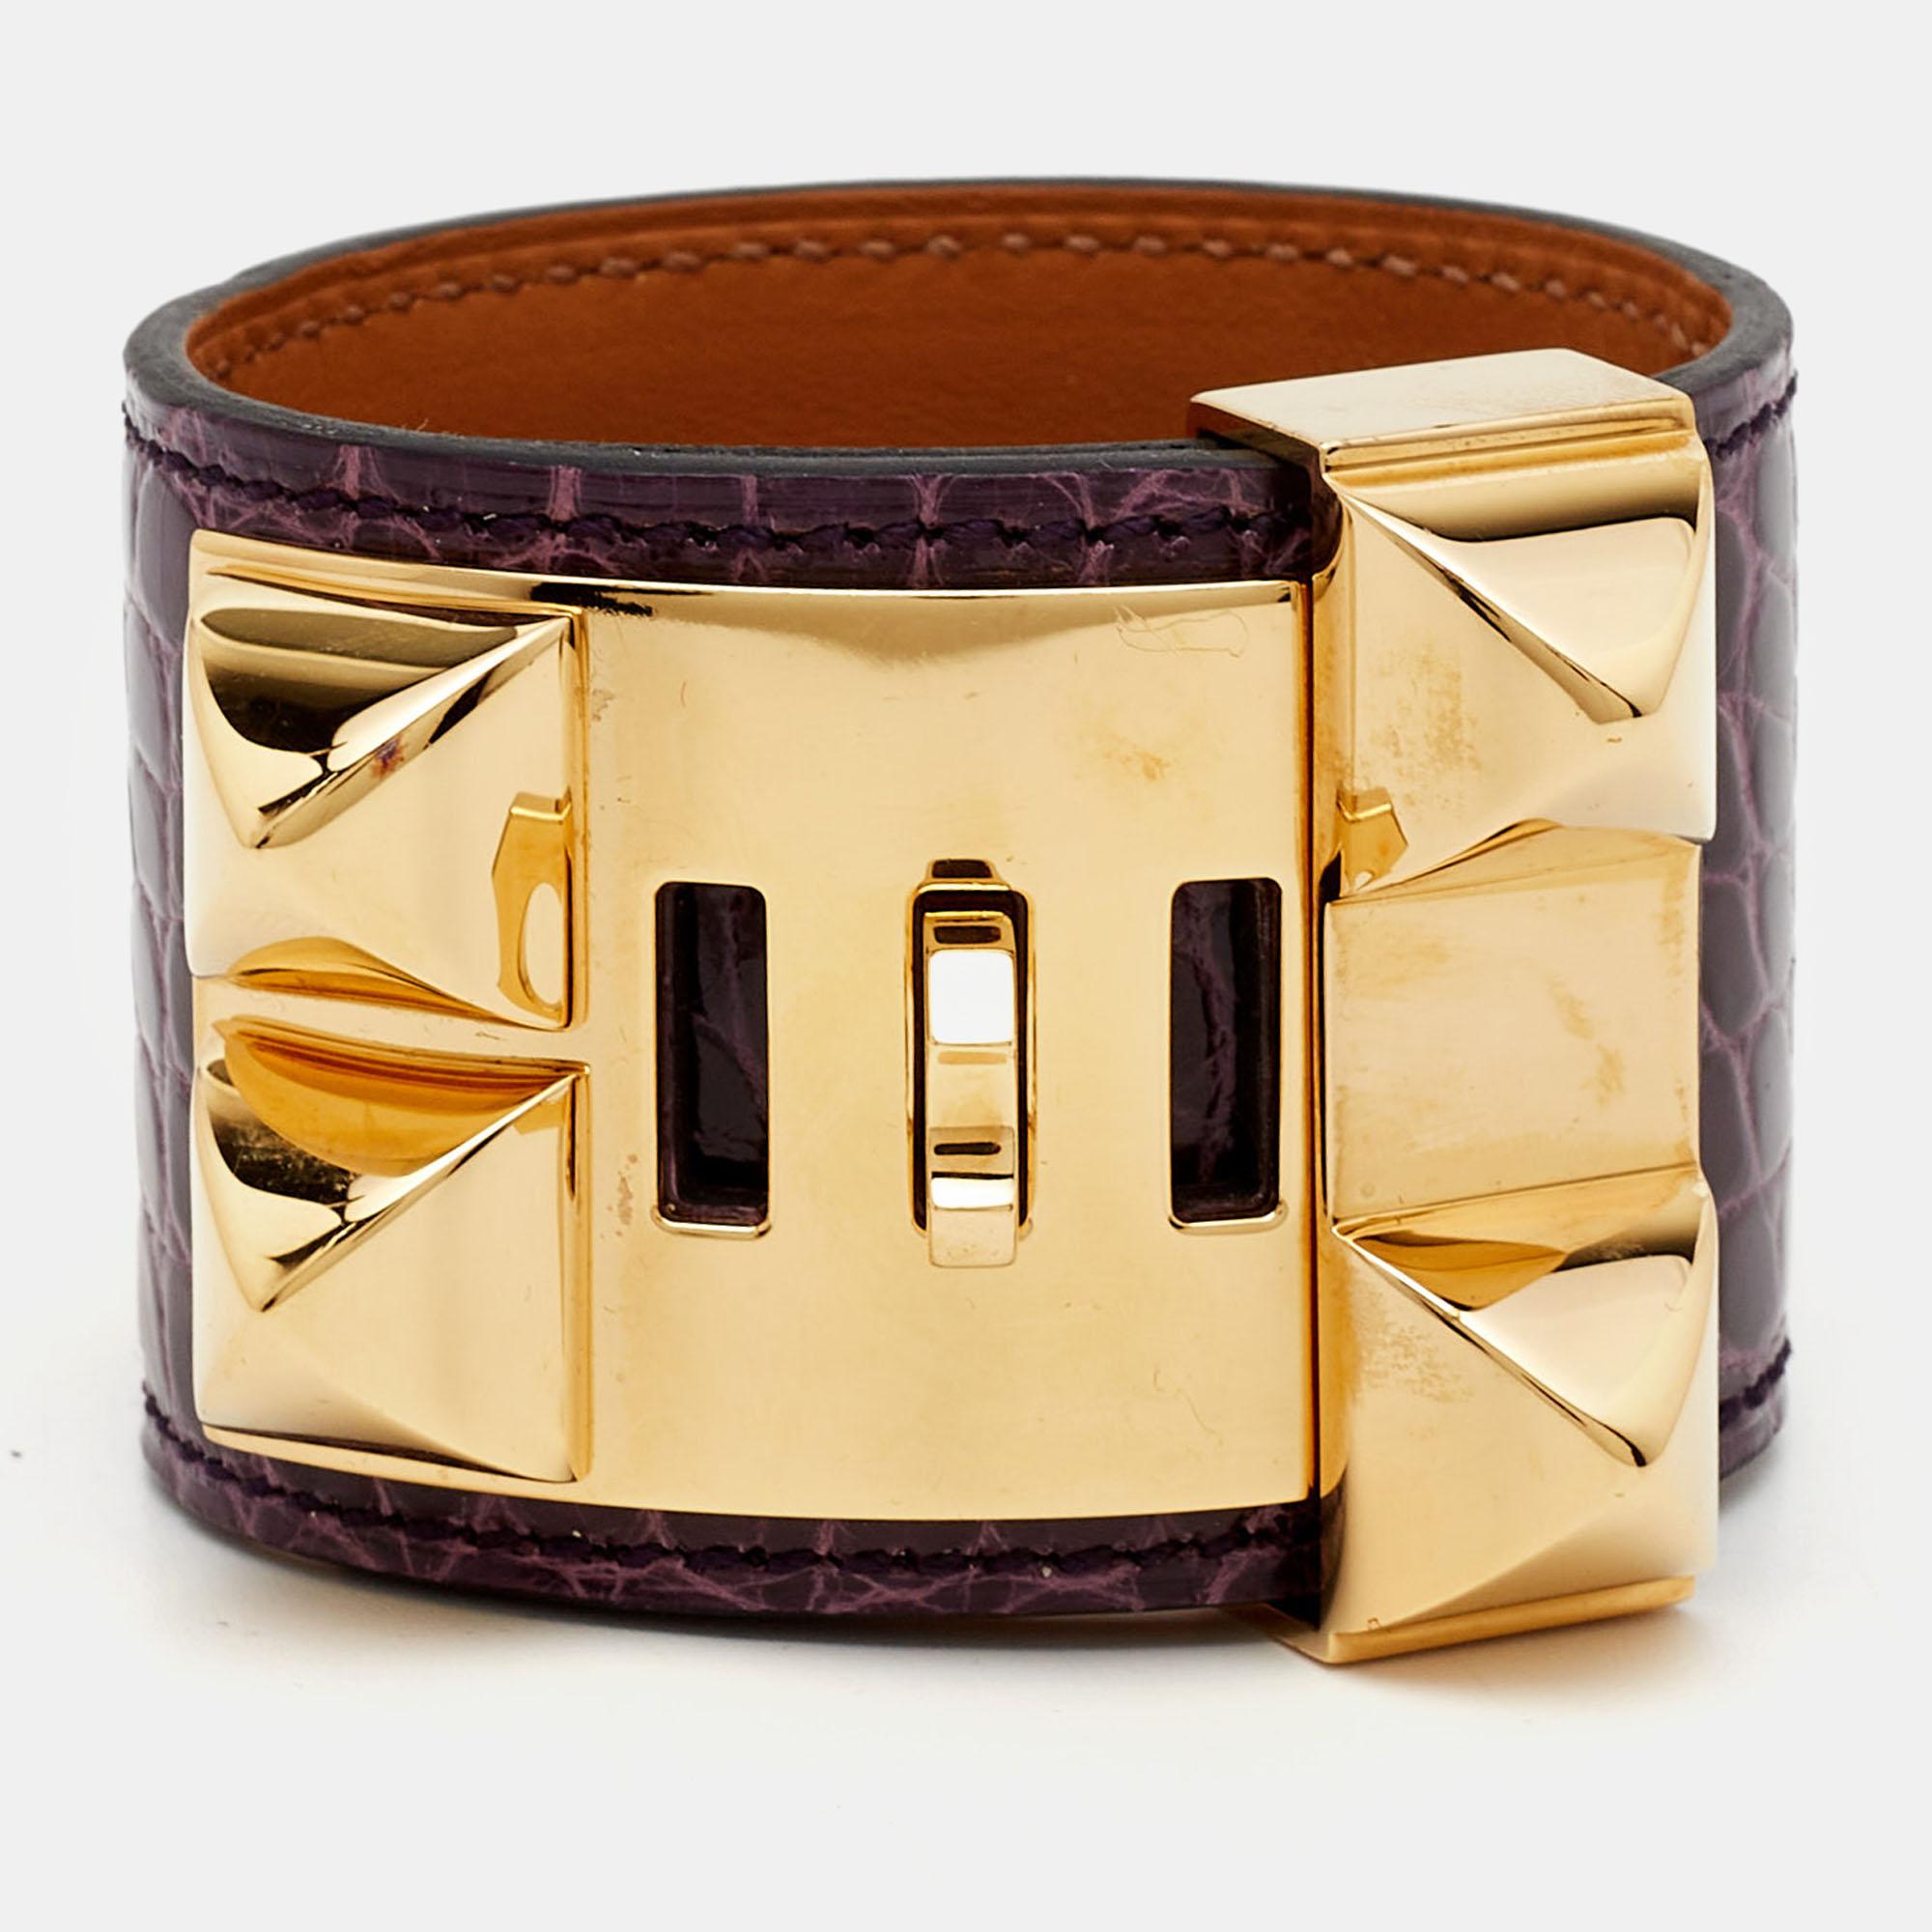 Hermes Collier De Chien Alligator Leather Gold Plated Bracelet For Sale 2